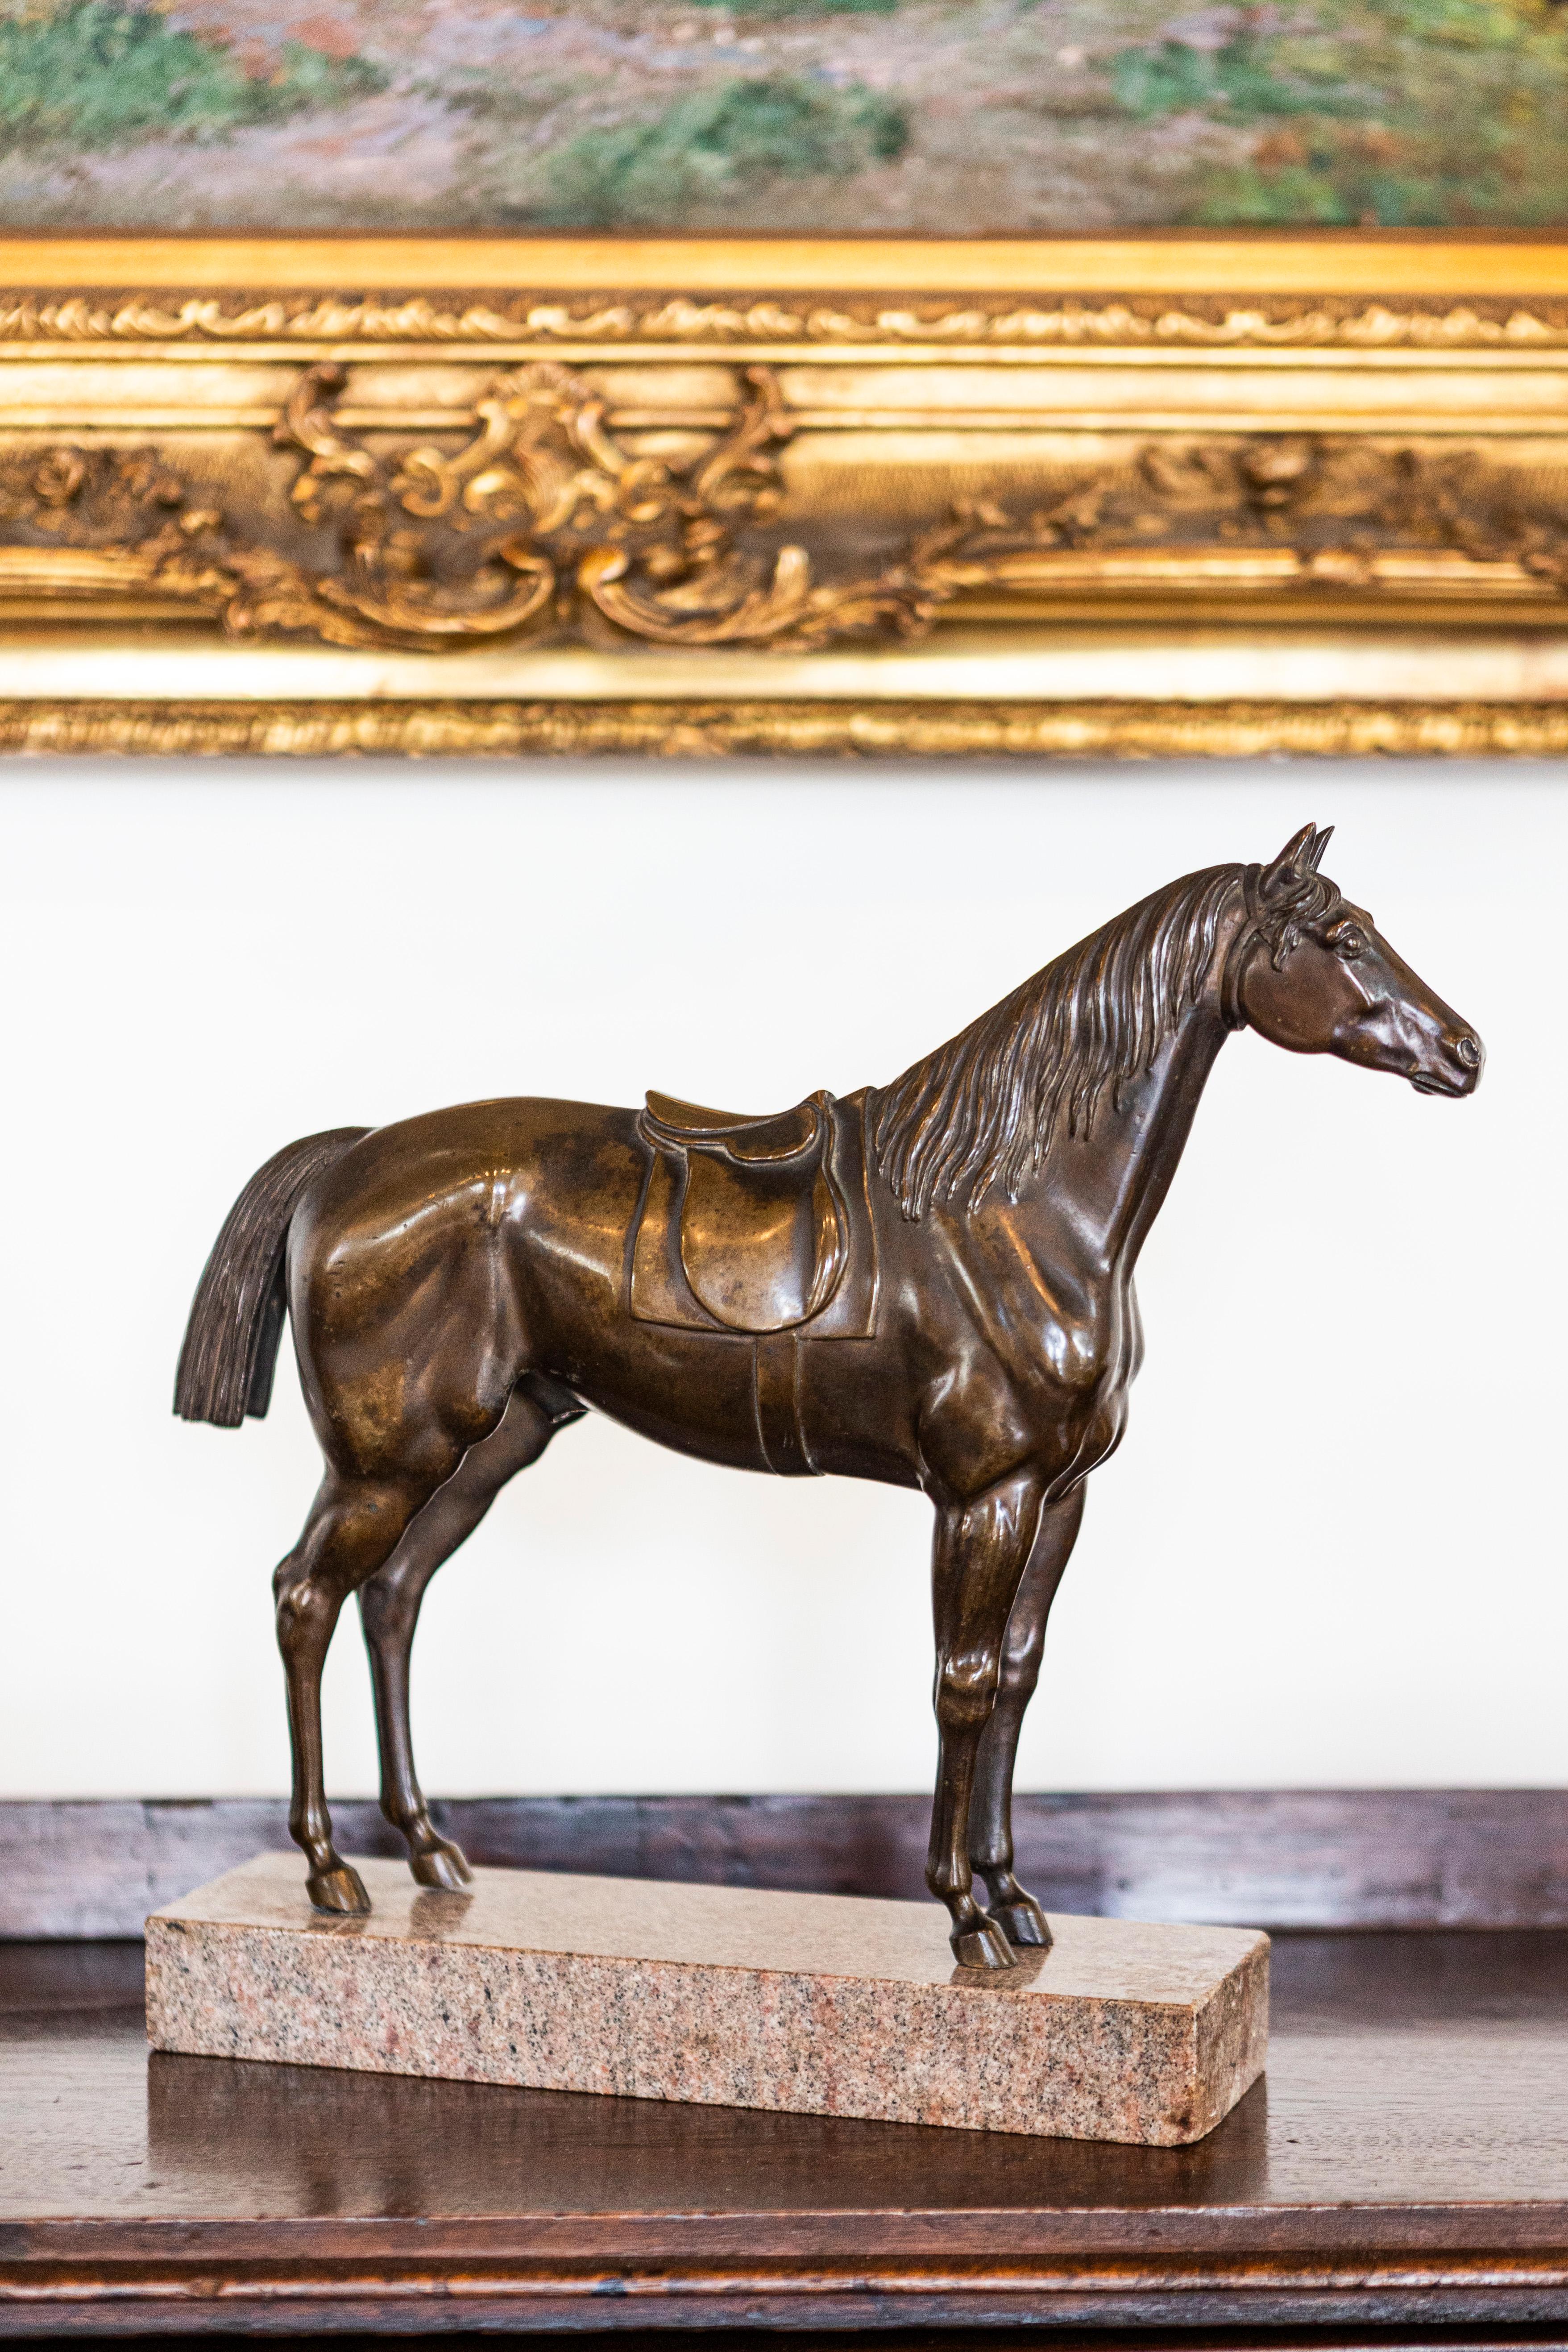 Cette exquise statuette de cheval en bronze français datant du XXe siècle est un exemple indéniable de la finesse de l'artisanat, mise en valeur sur un socle en granit sophistiqué. La statuette capture l'esprit majestueux du cheval, avec sa